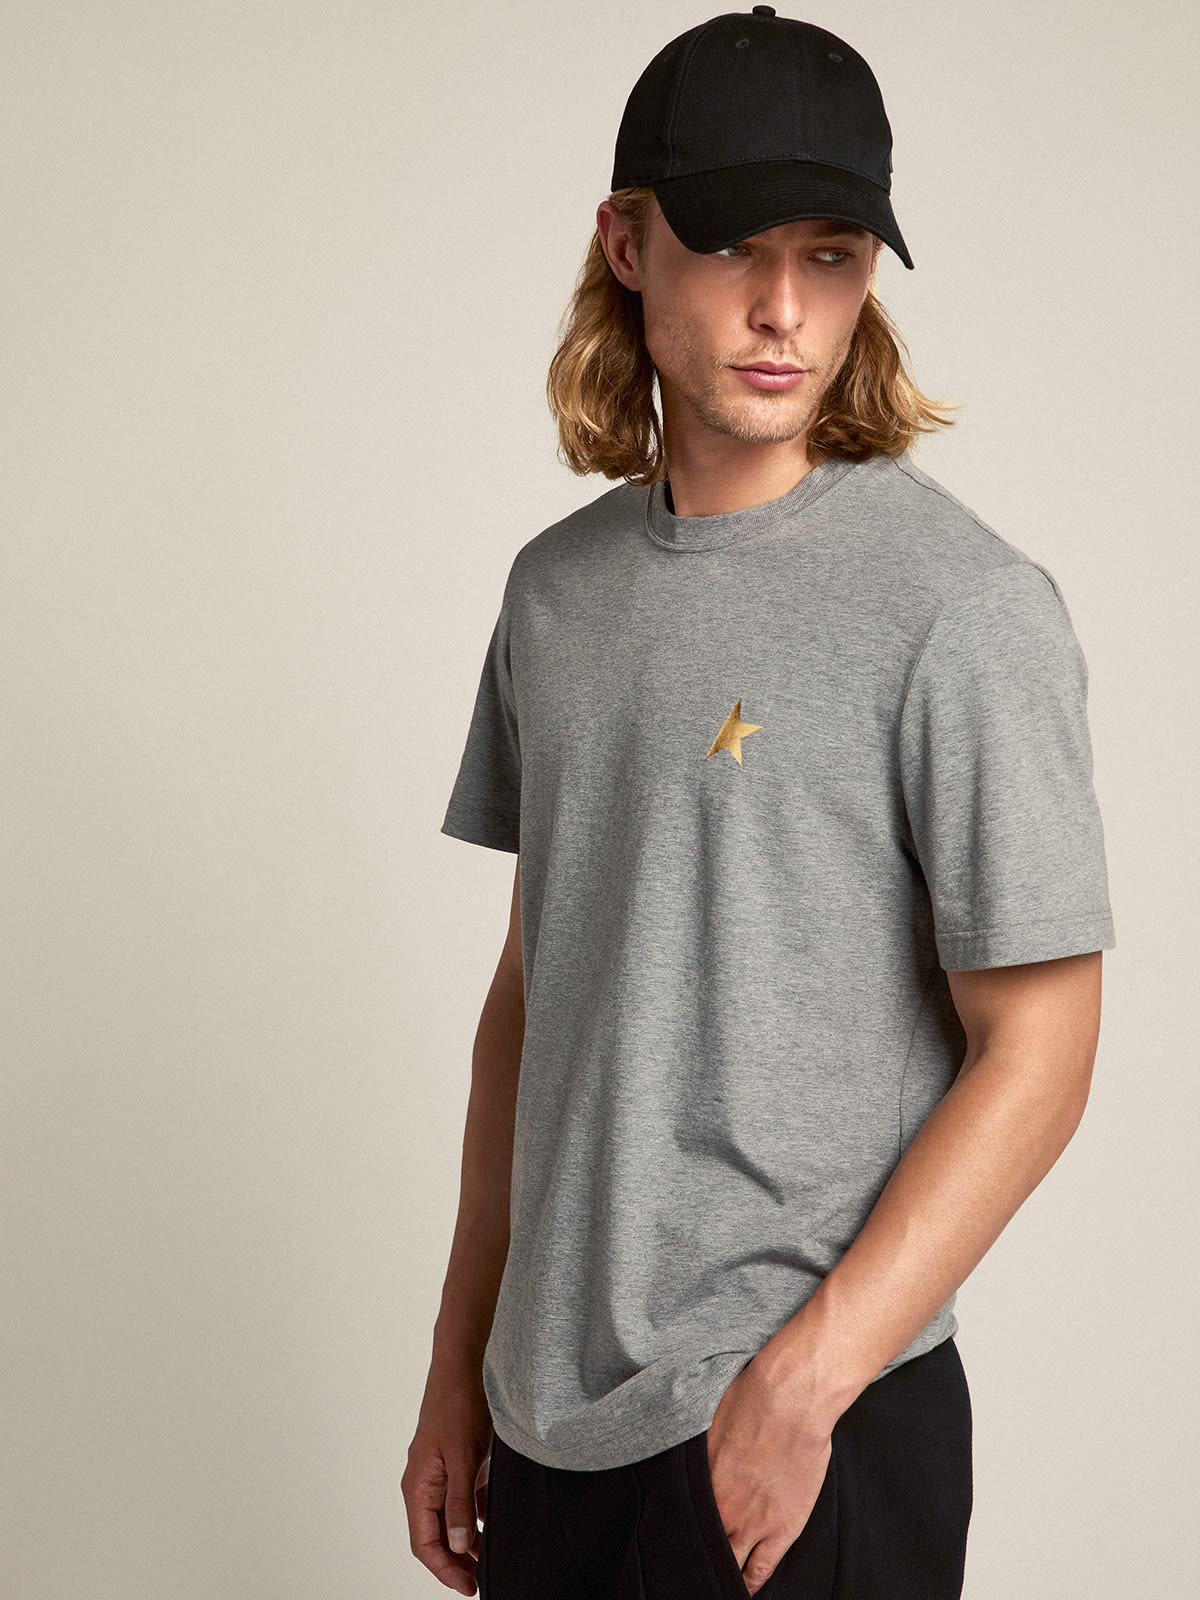 Golden Goose - T-shirt homme gris chiné avec étoile dorée sur le devant in 